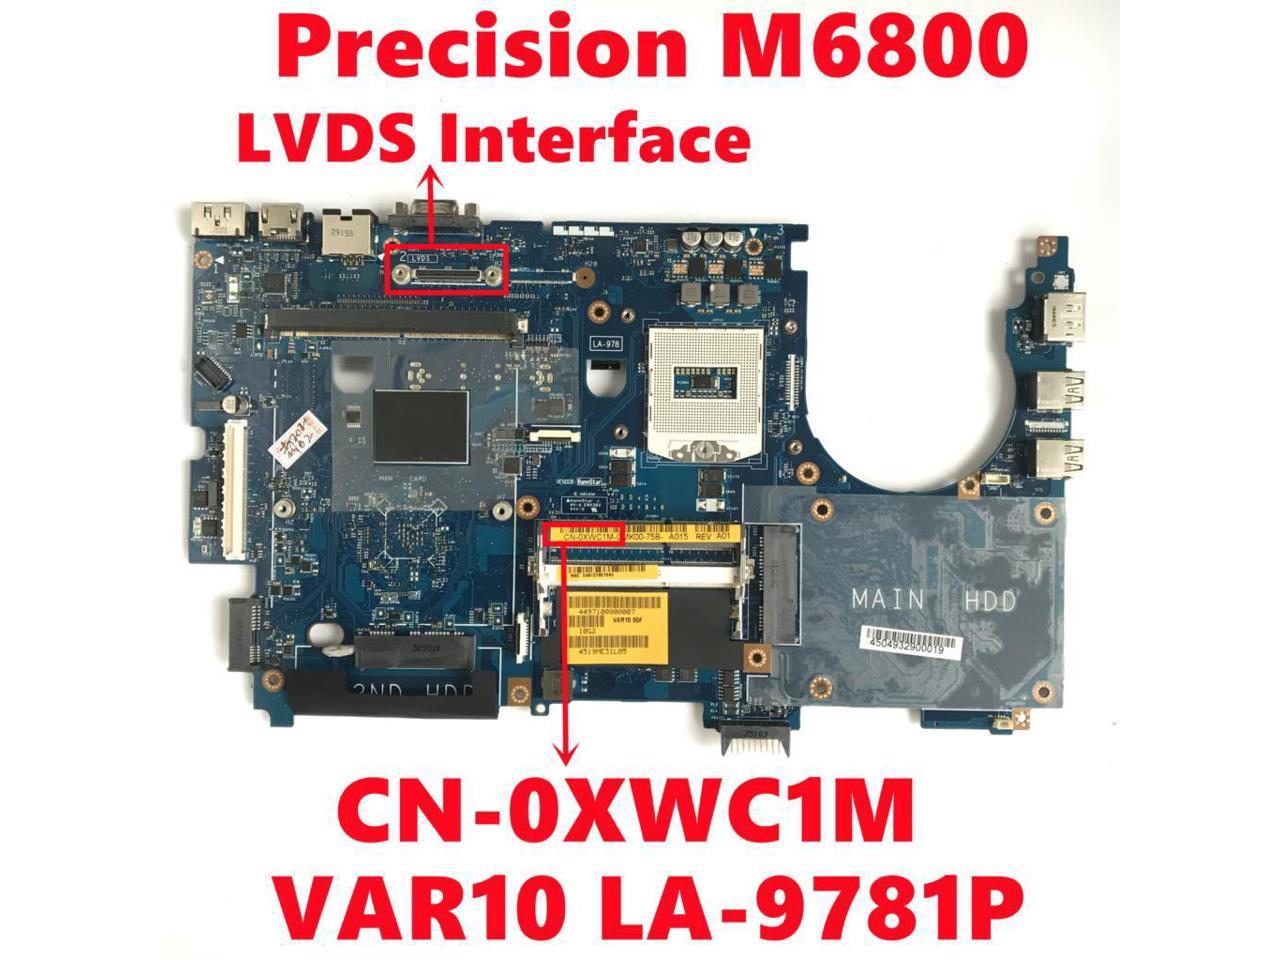 Dell Precision M6800 Mainboard Laptop Reparatur LA-9781P 